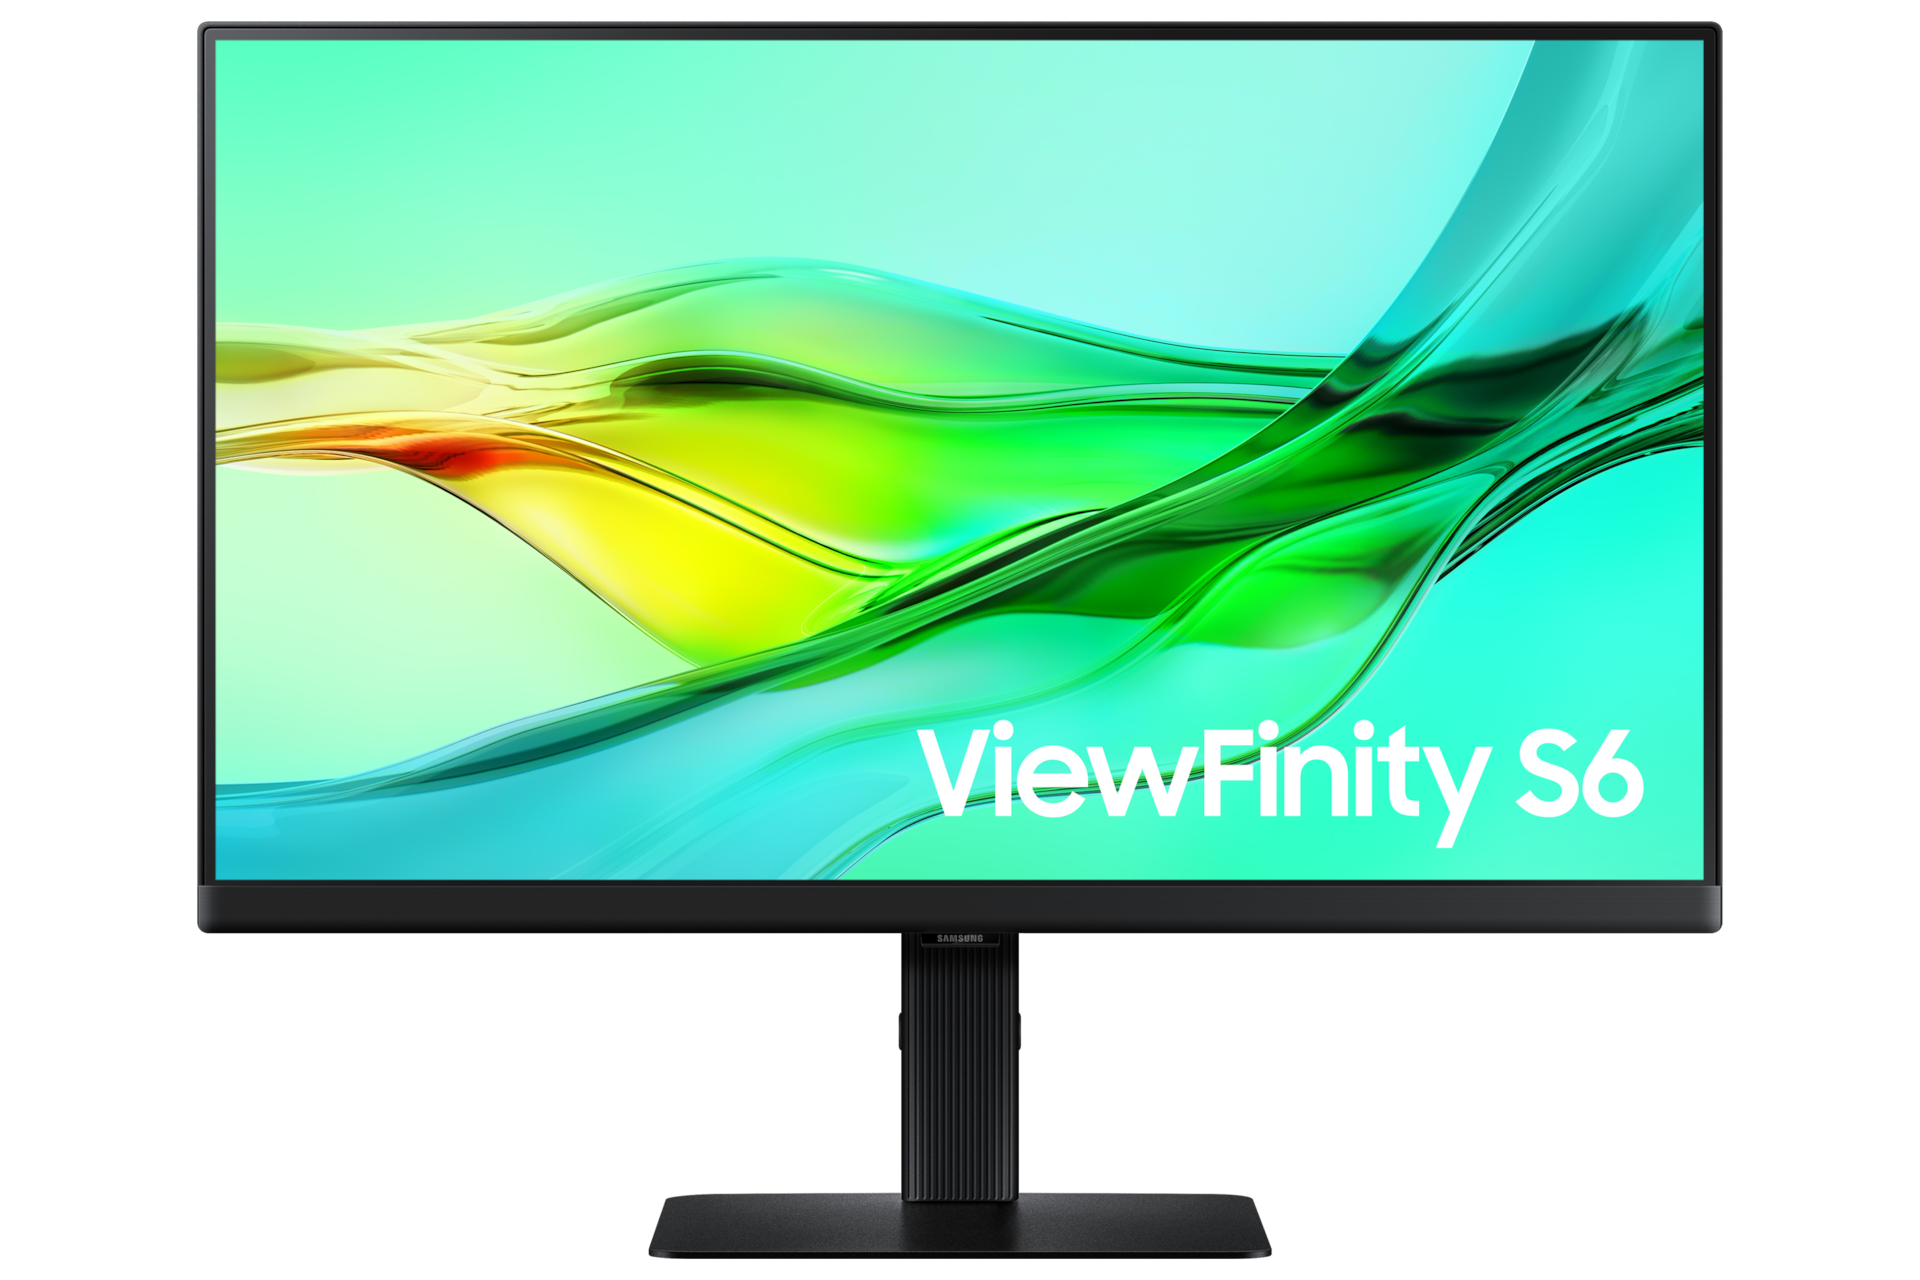 Vorderseite des 24-inch Samsung ViewFinity S60UD. Der Bildschirm zeigt eine grüne Welle.